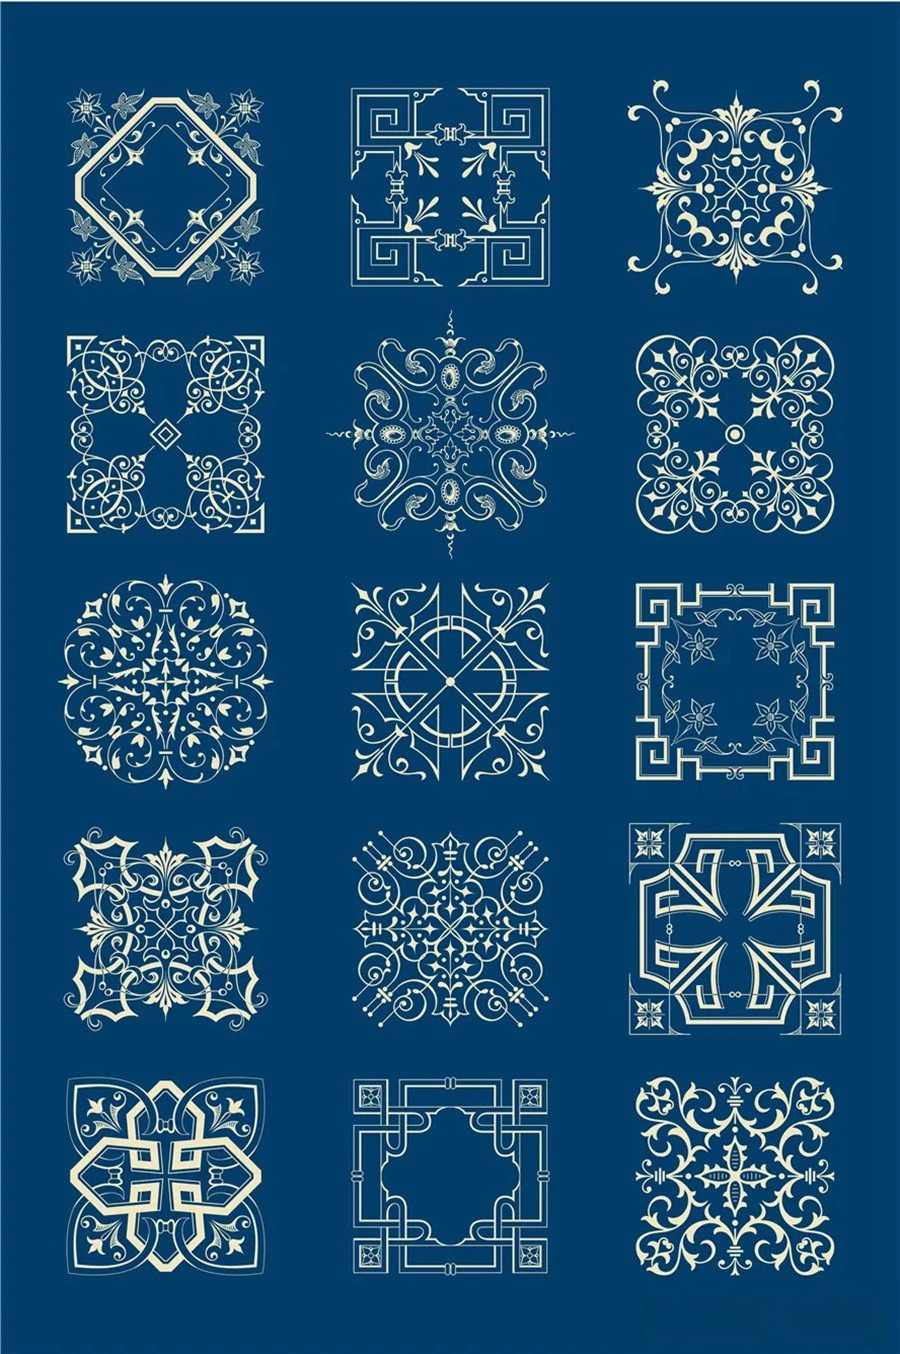 中国风传统古典青花瓷图案花纹图形纹样AI矢量模板花纹设计素材 图片素材 第13张